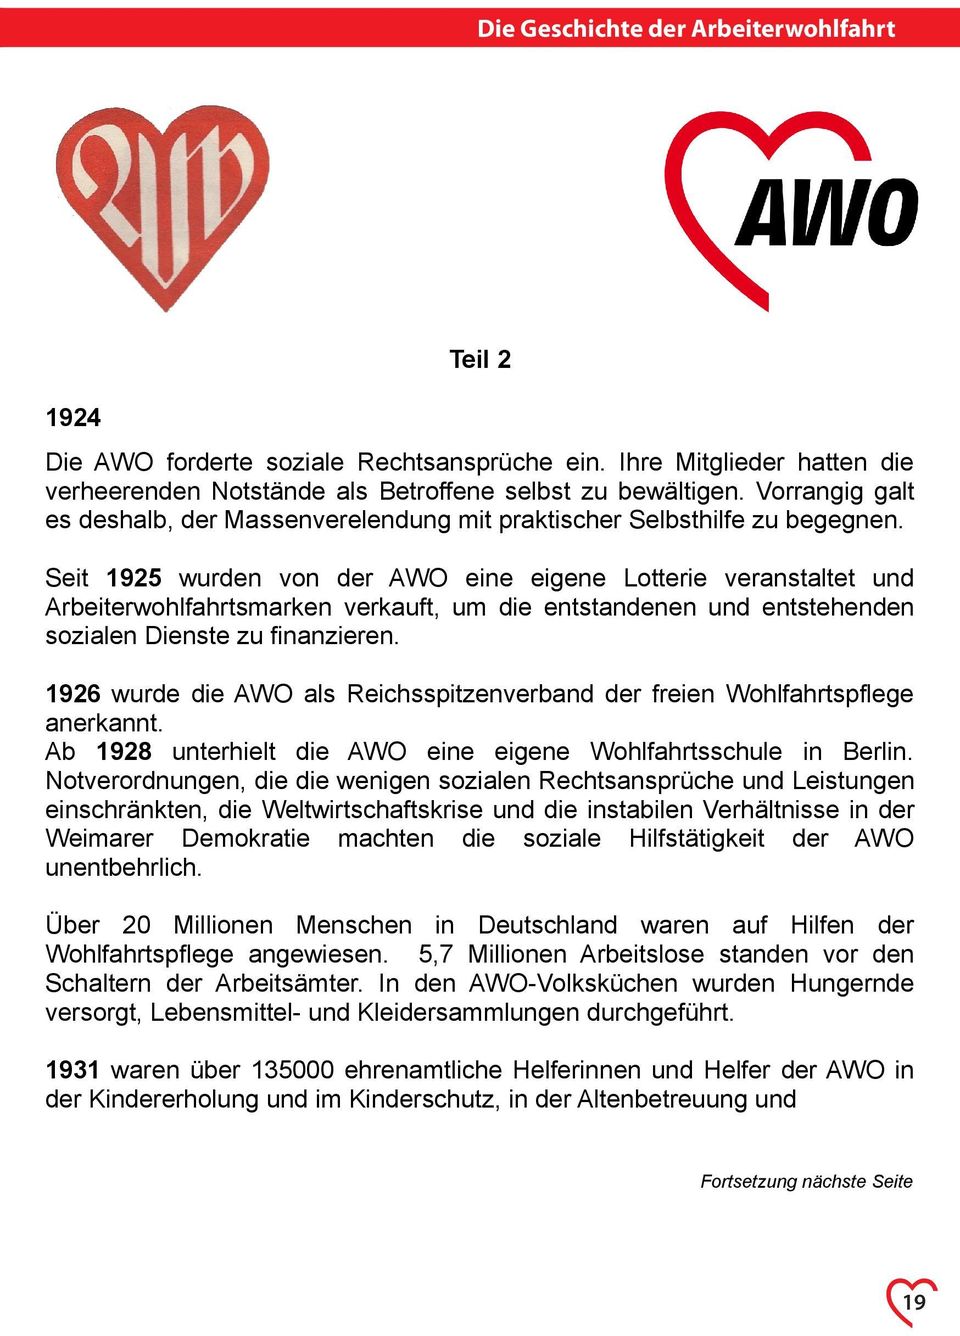 Seit 1925 wurden von der AWO eine eigene Lotterie veranstaltet und Arbeiterwohlfahrtsmarken verkauft, um die entstandenen und entstehenden sozialen Dienste zu finanzieren.